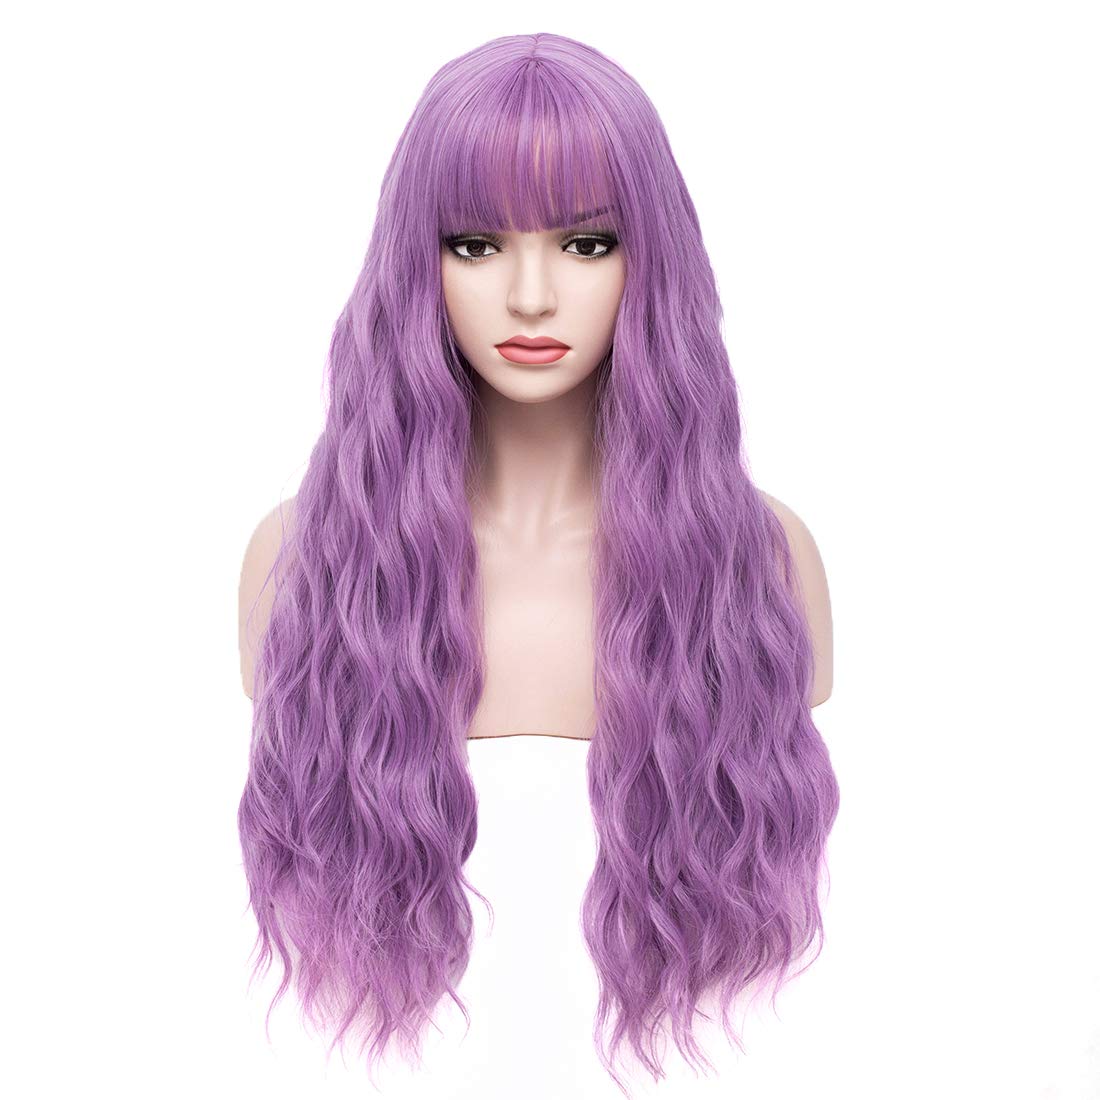 purple wig lavendar wig,Cosplay Wig Curly Wavy Blonde Hair Wig with Bangs